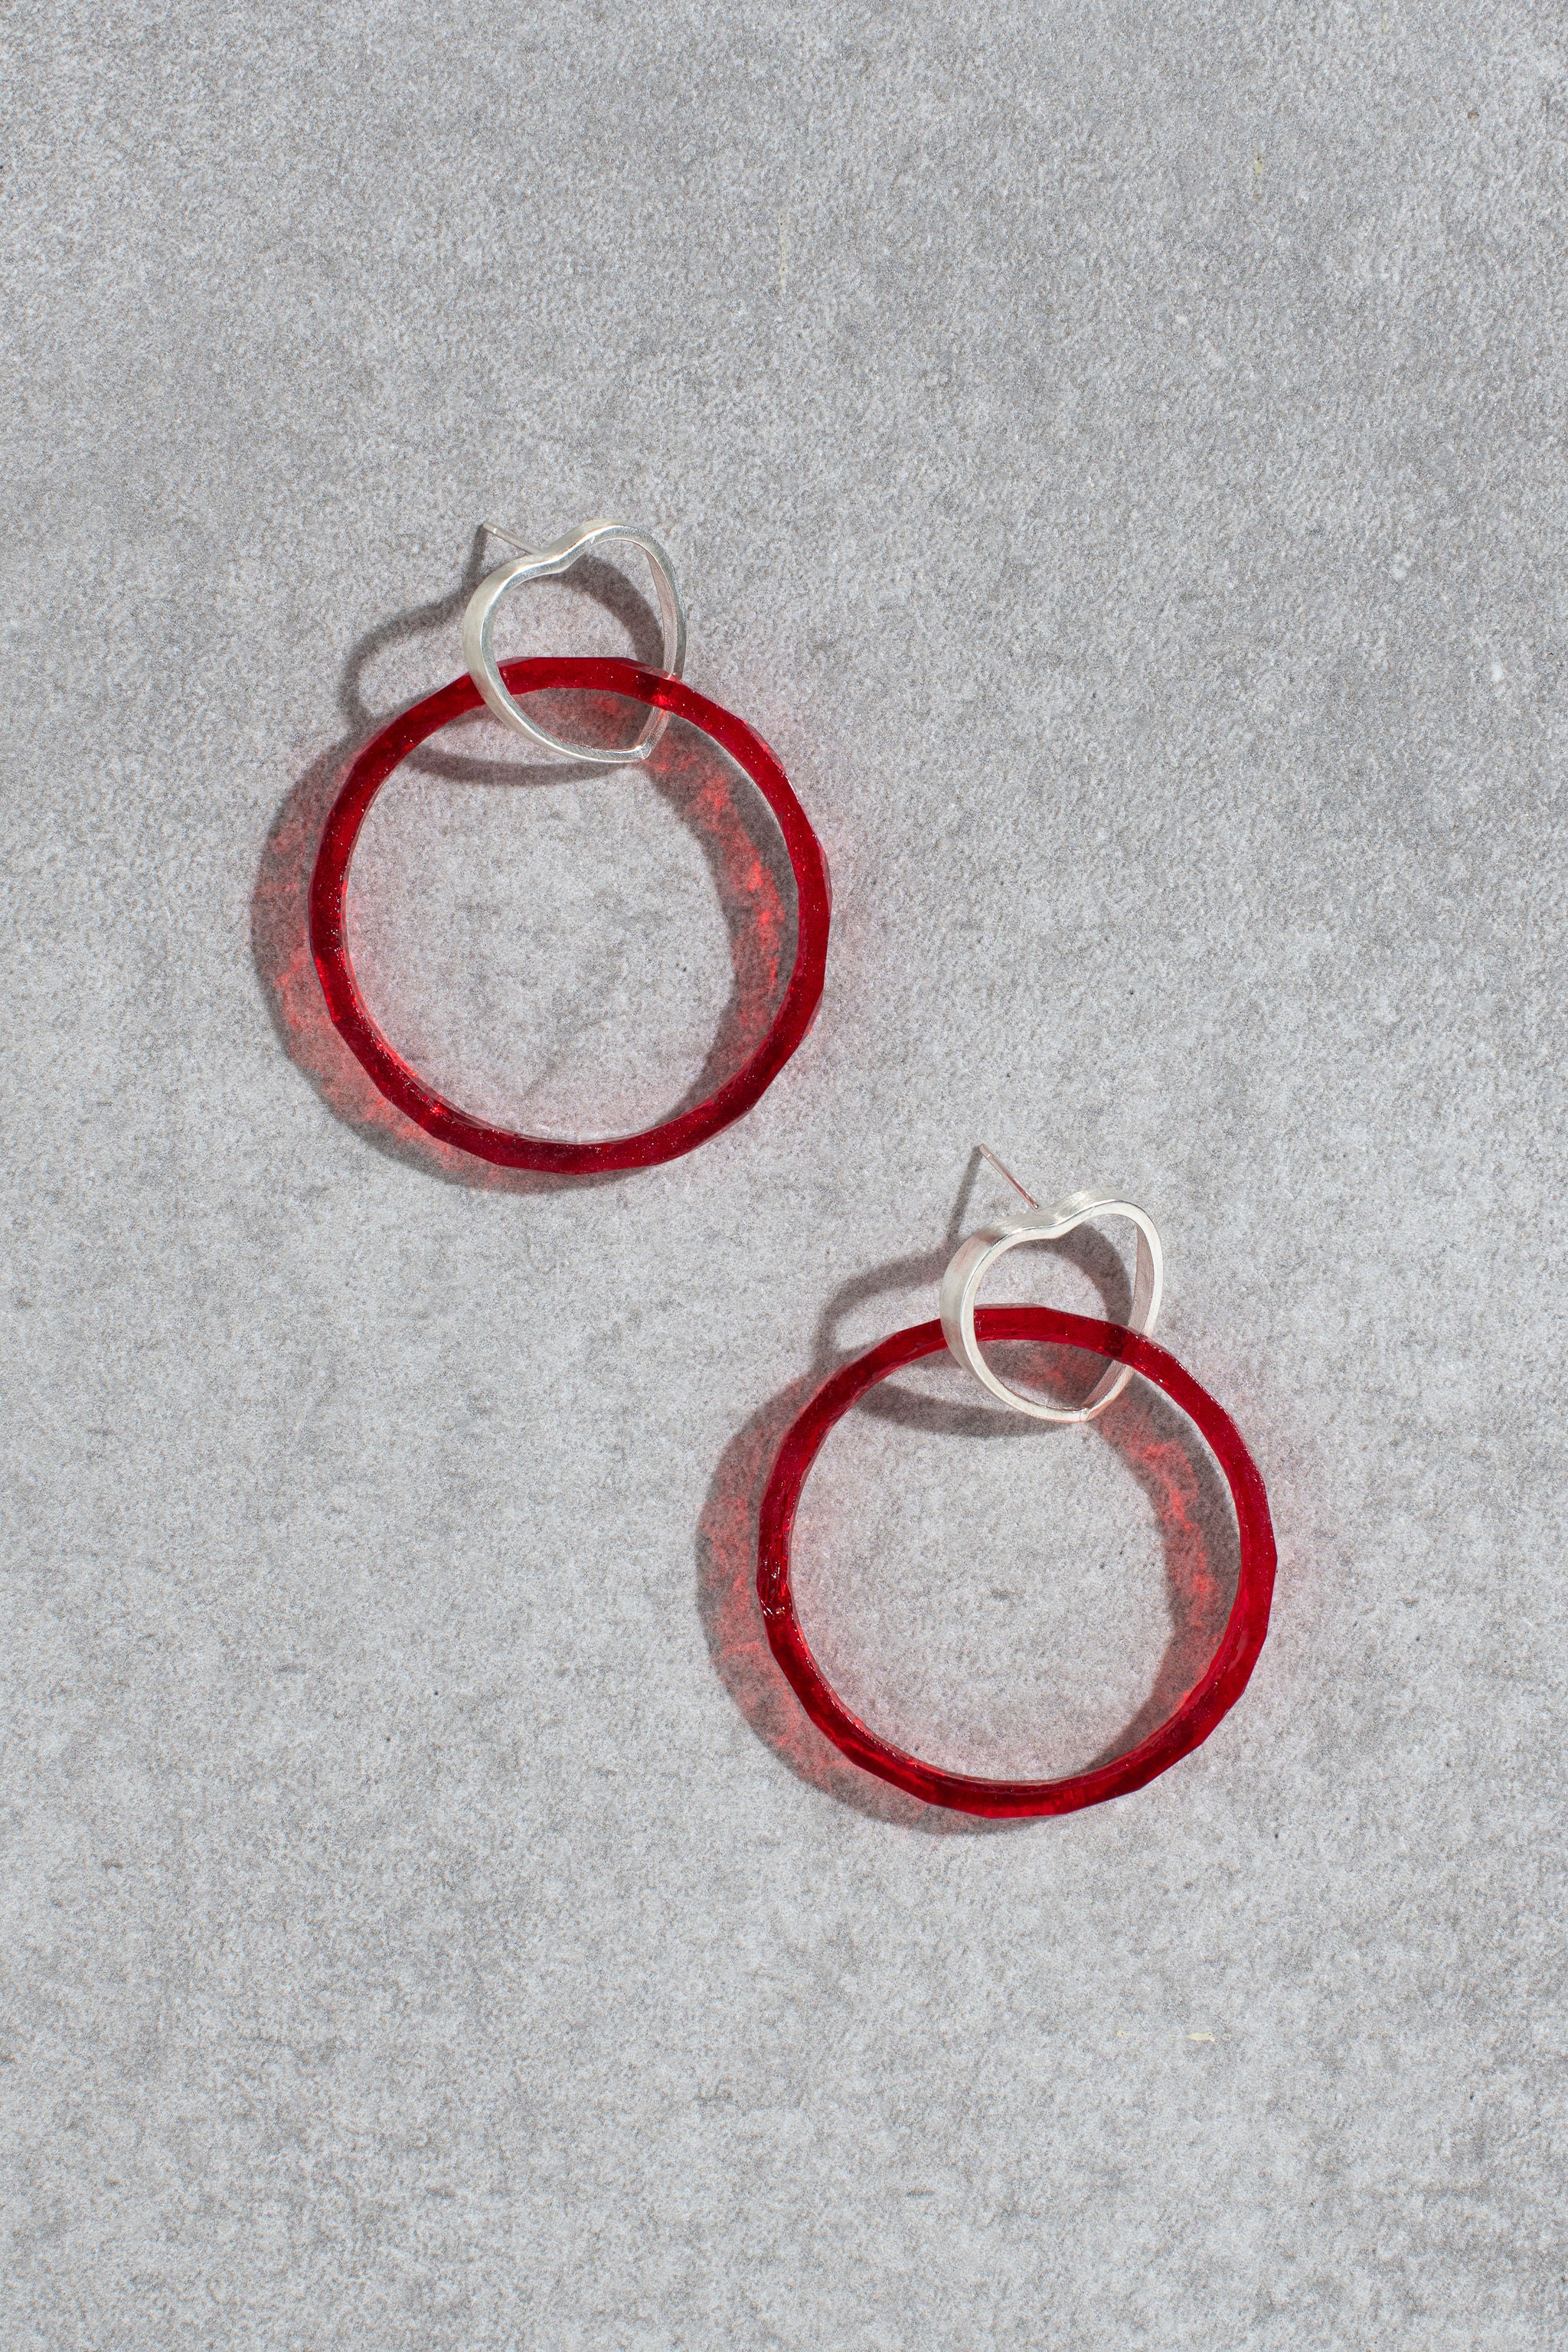 Heart earrings - red